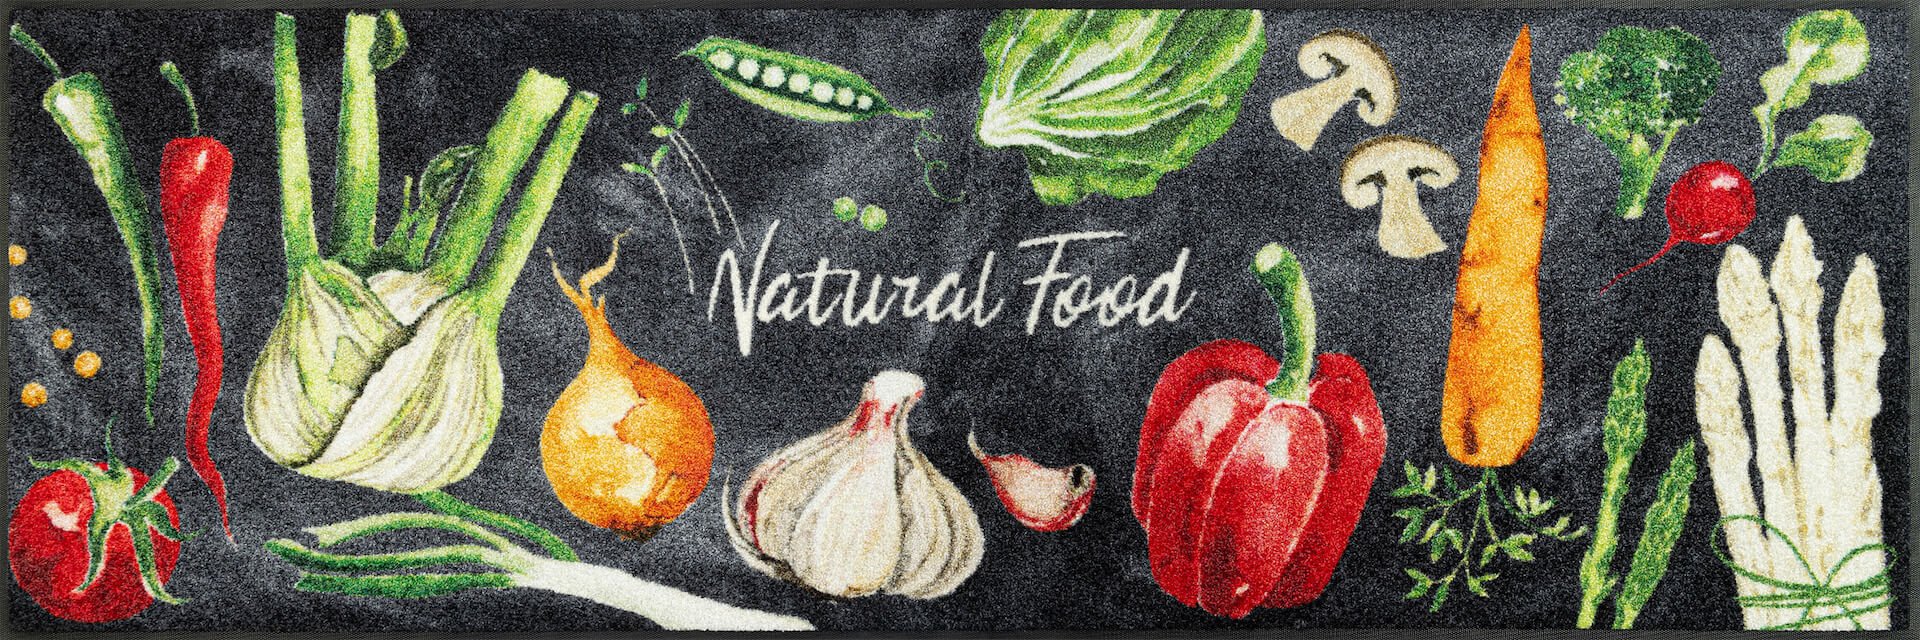 Fußmatte Natural Food, Wash & Dry Küchenmatte, mehrfarbig, 060 x 180 cm, Draufsicht